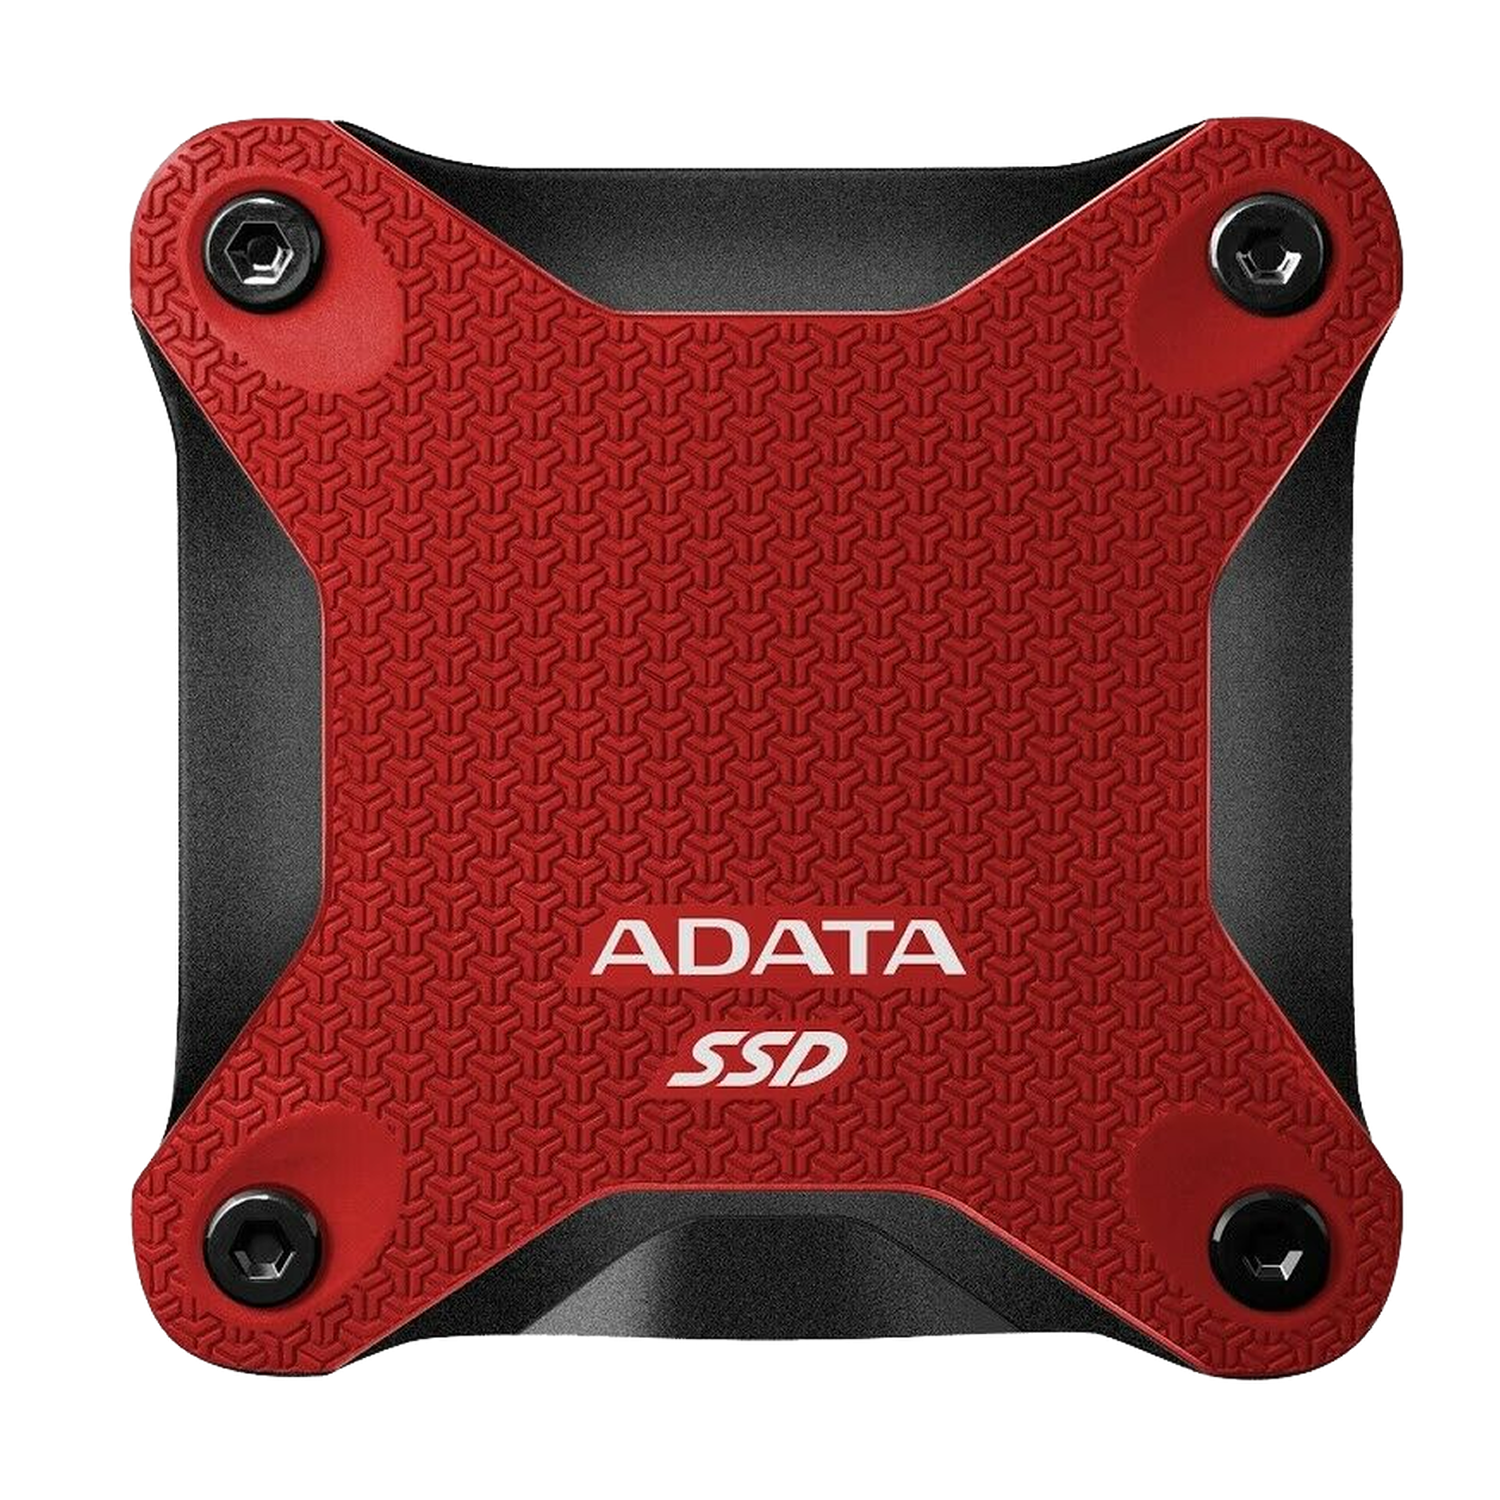 Externi SSD Adata 480GB ASD600Q Red